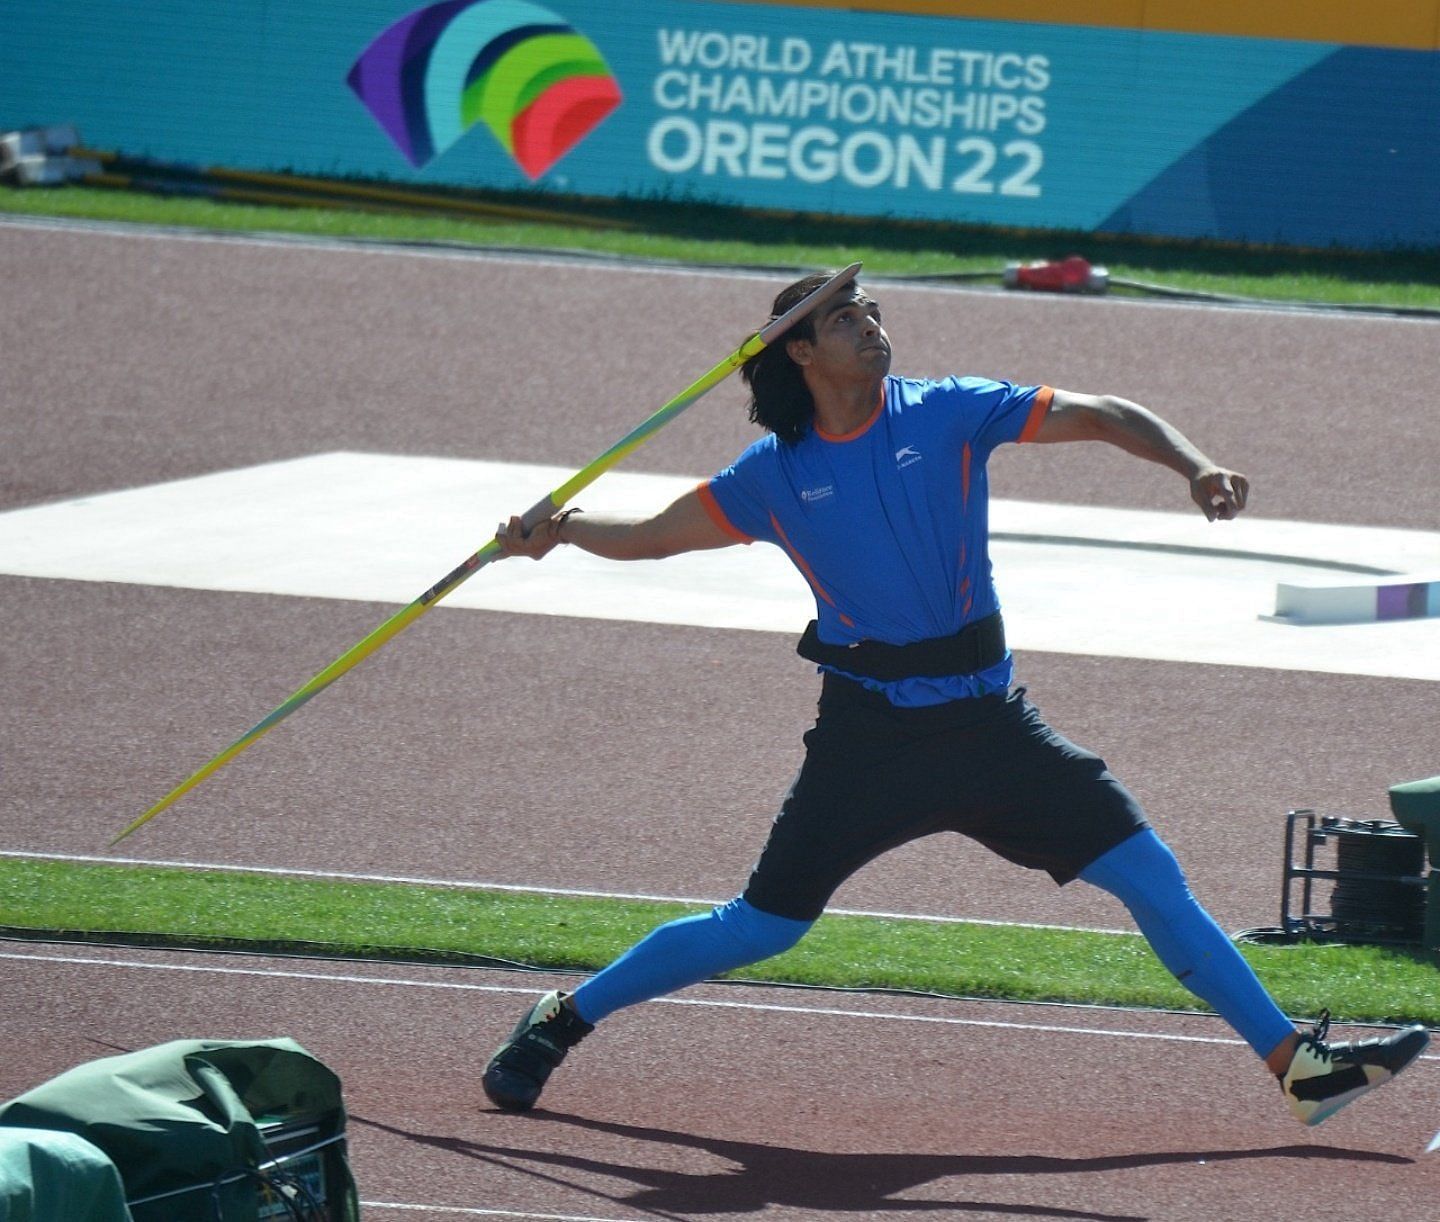 नीरज चोपड़ा विश्व चैंपियनशिप्स में मेडल जीतने वाले पहले भारतीय पुरुष एथलीट हैं